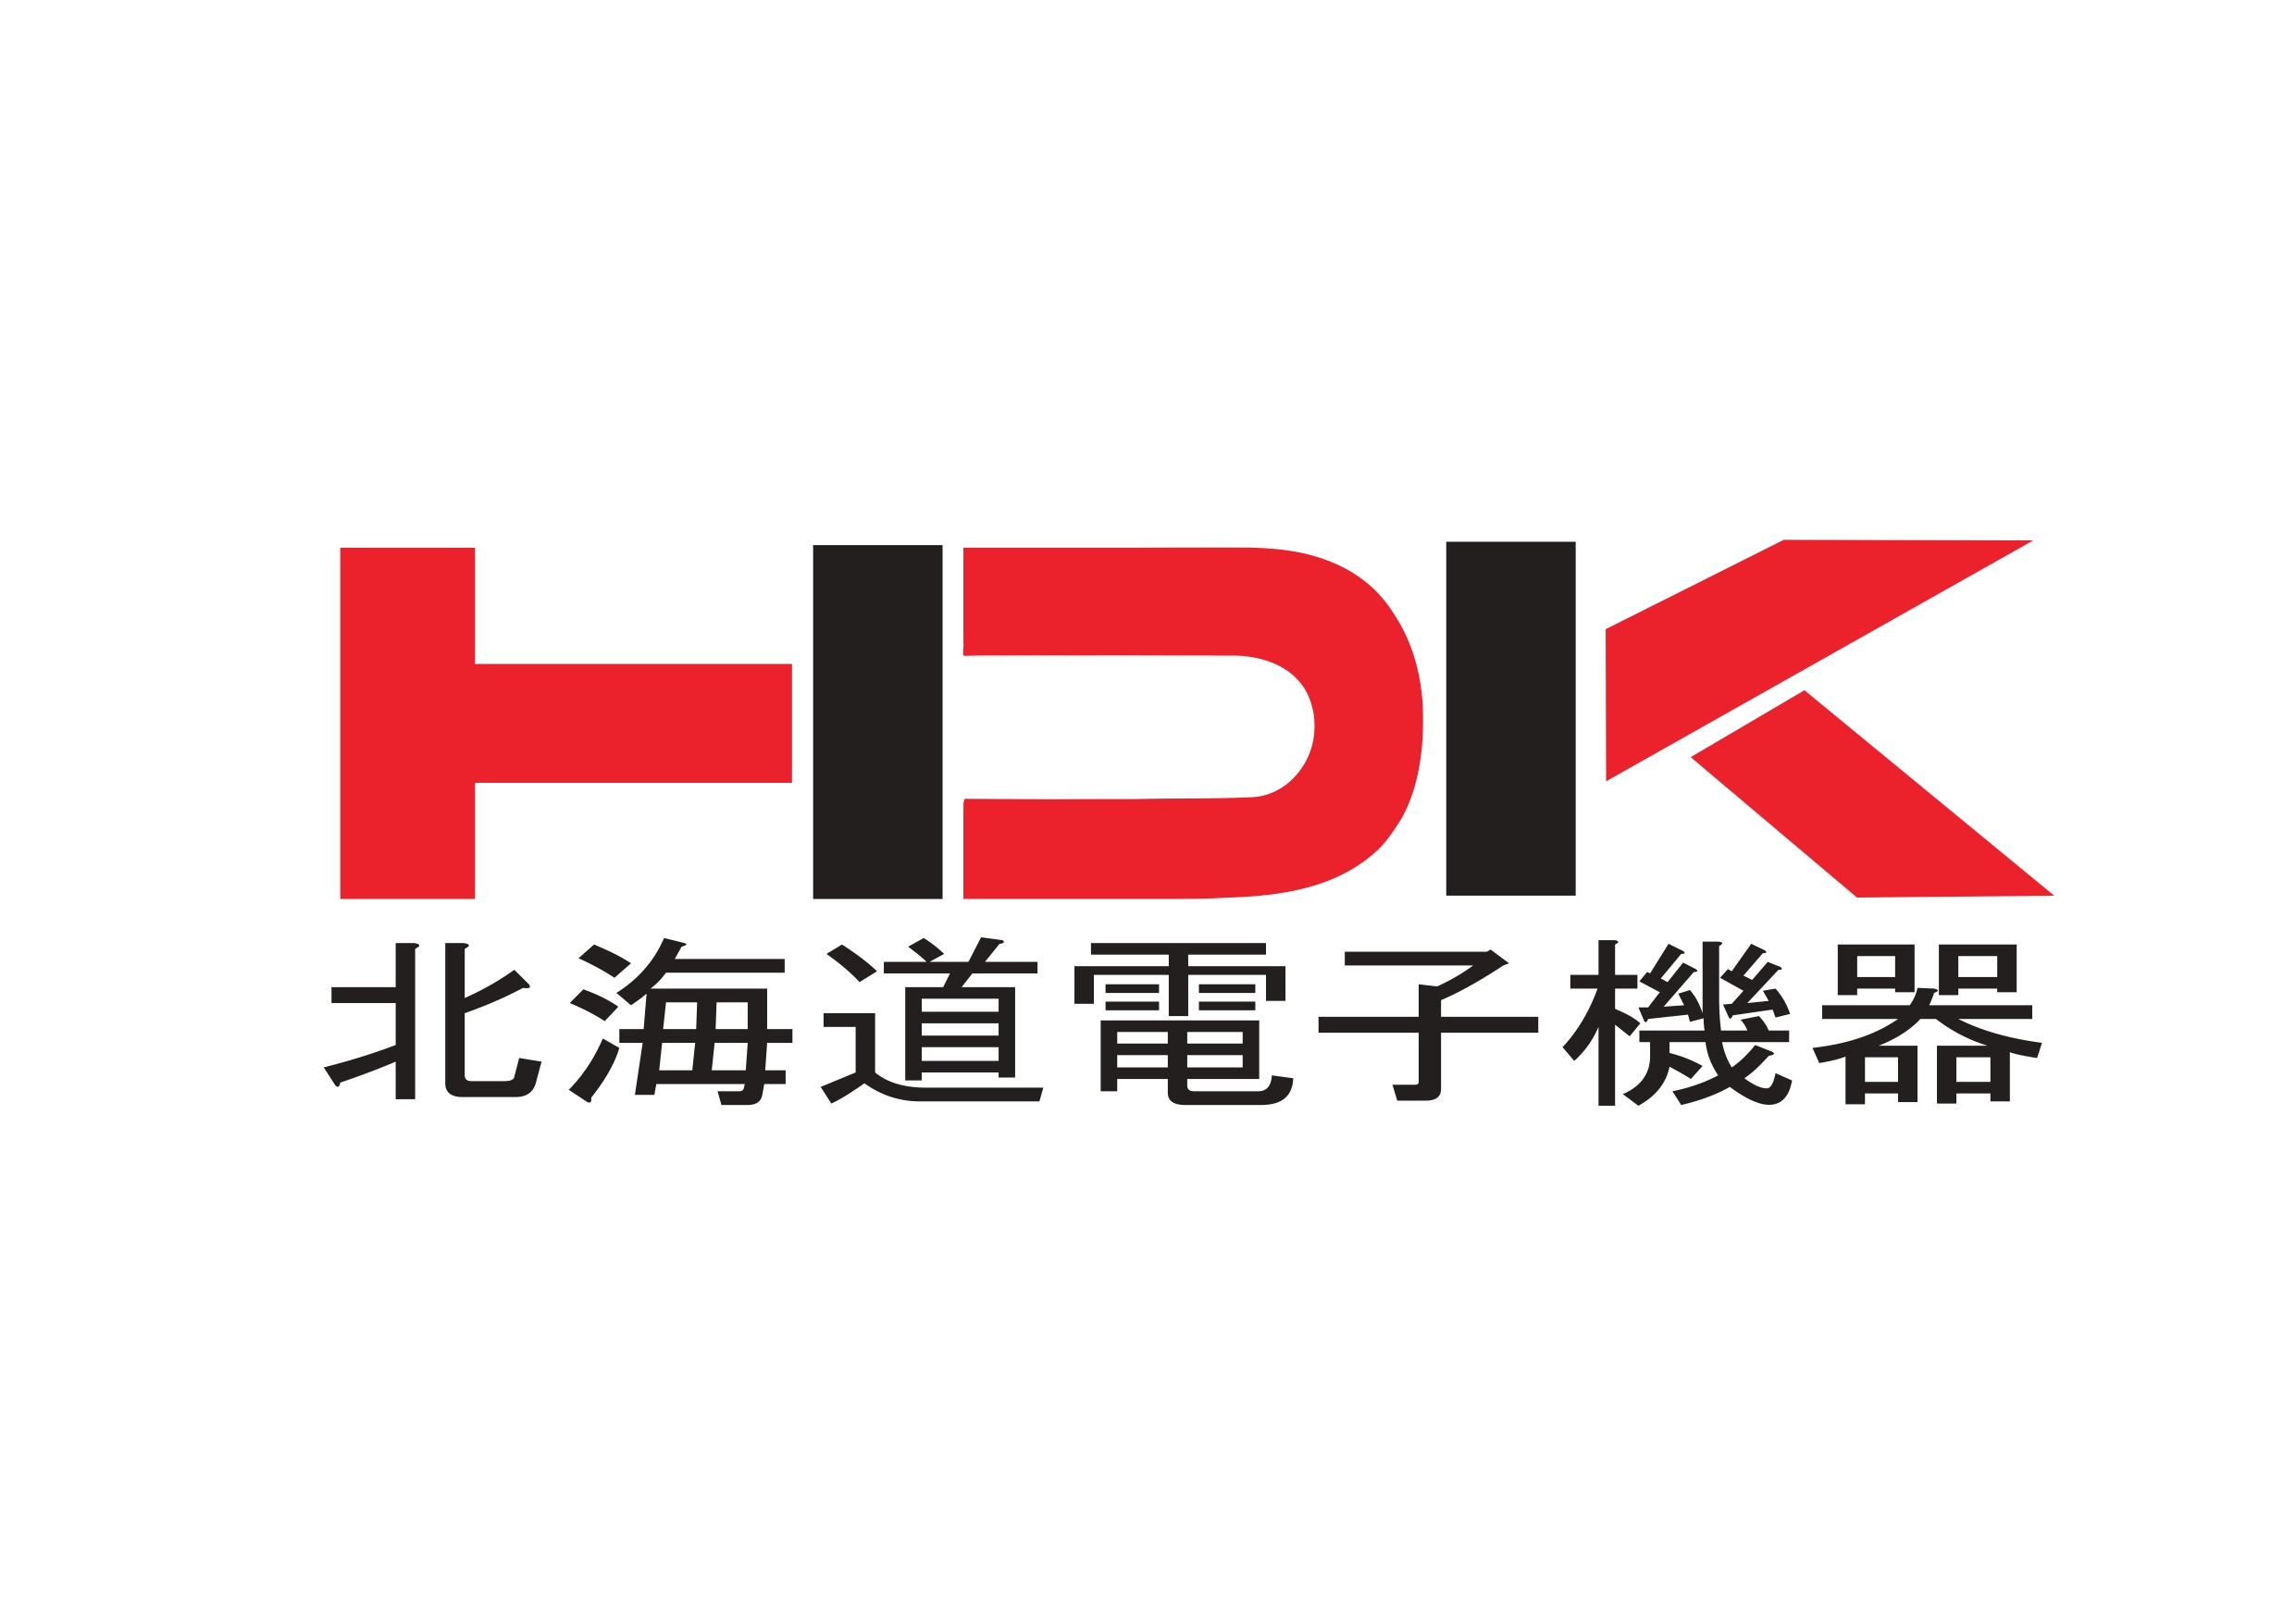 北海道電子機器株式会社 のロゴ